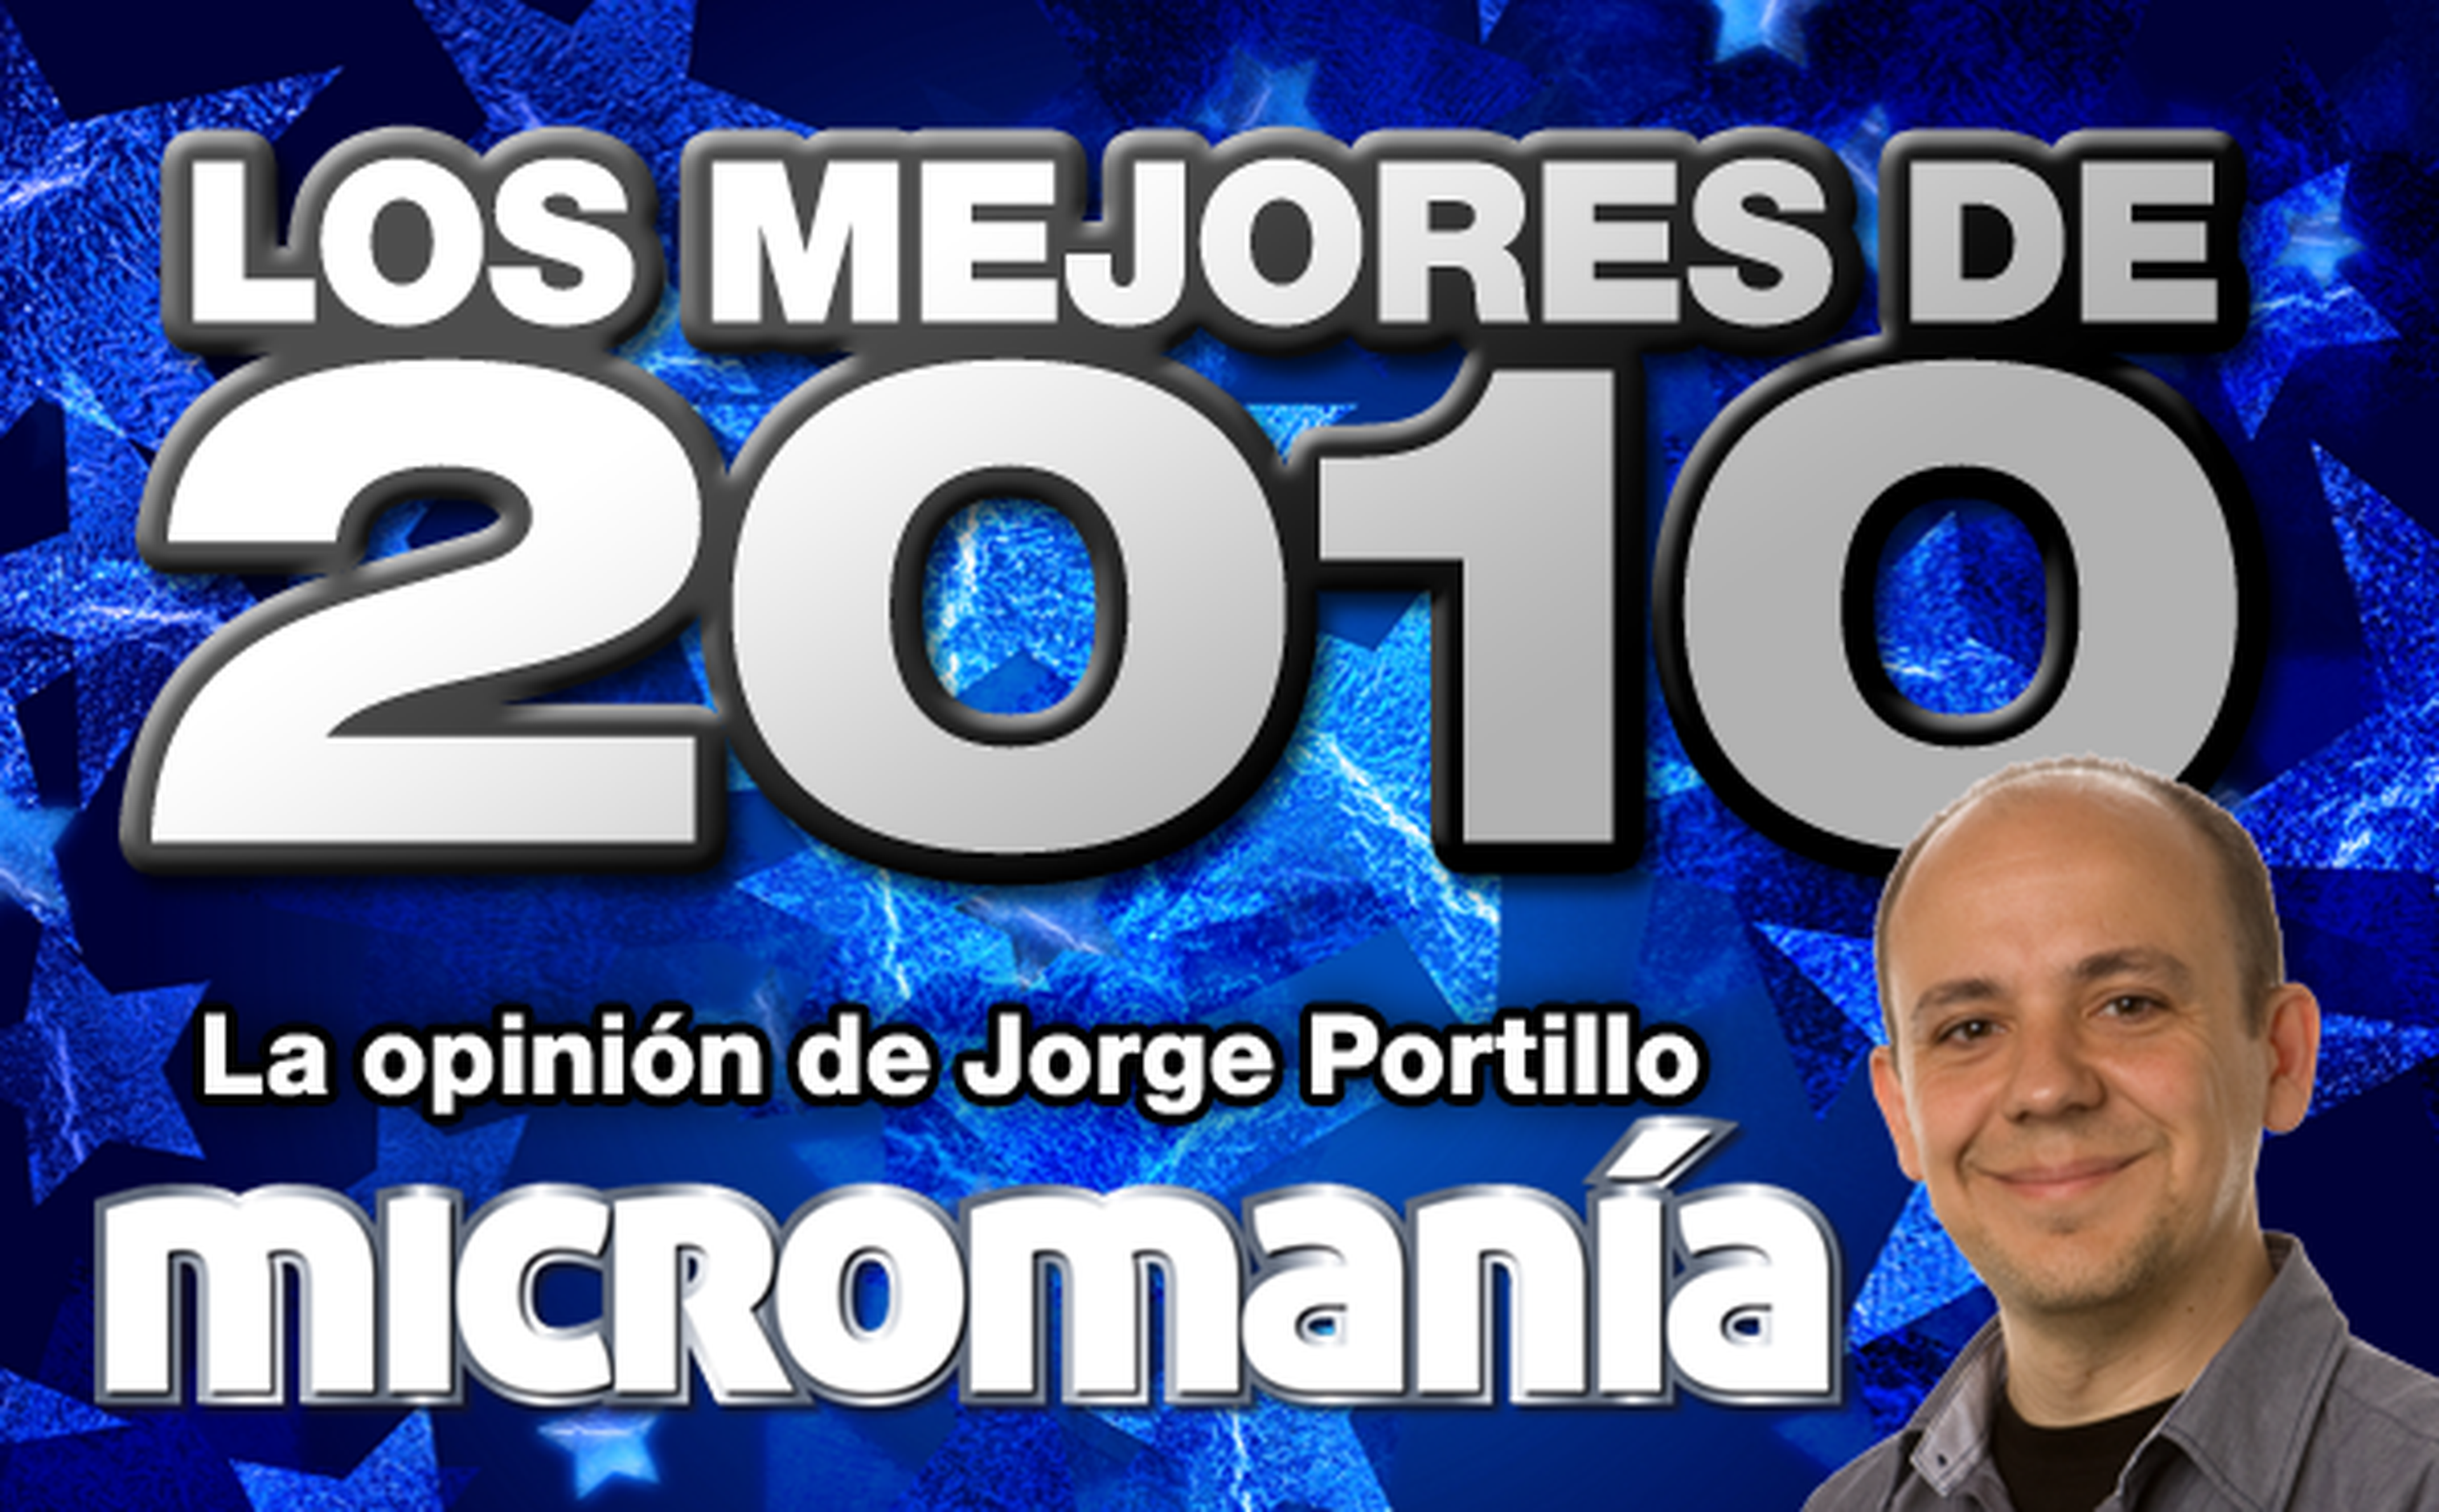 Los mejores de 2010: Jorge Portillo